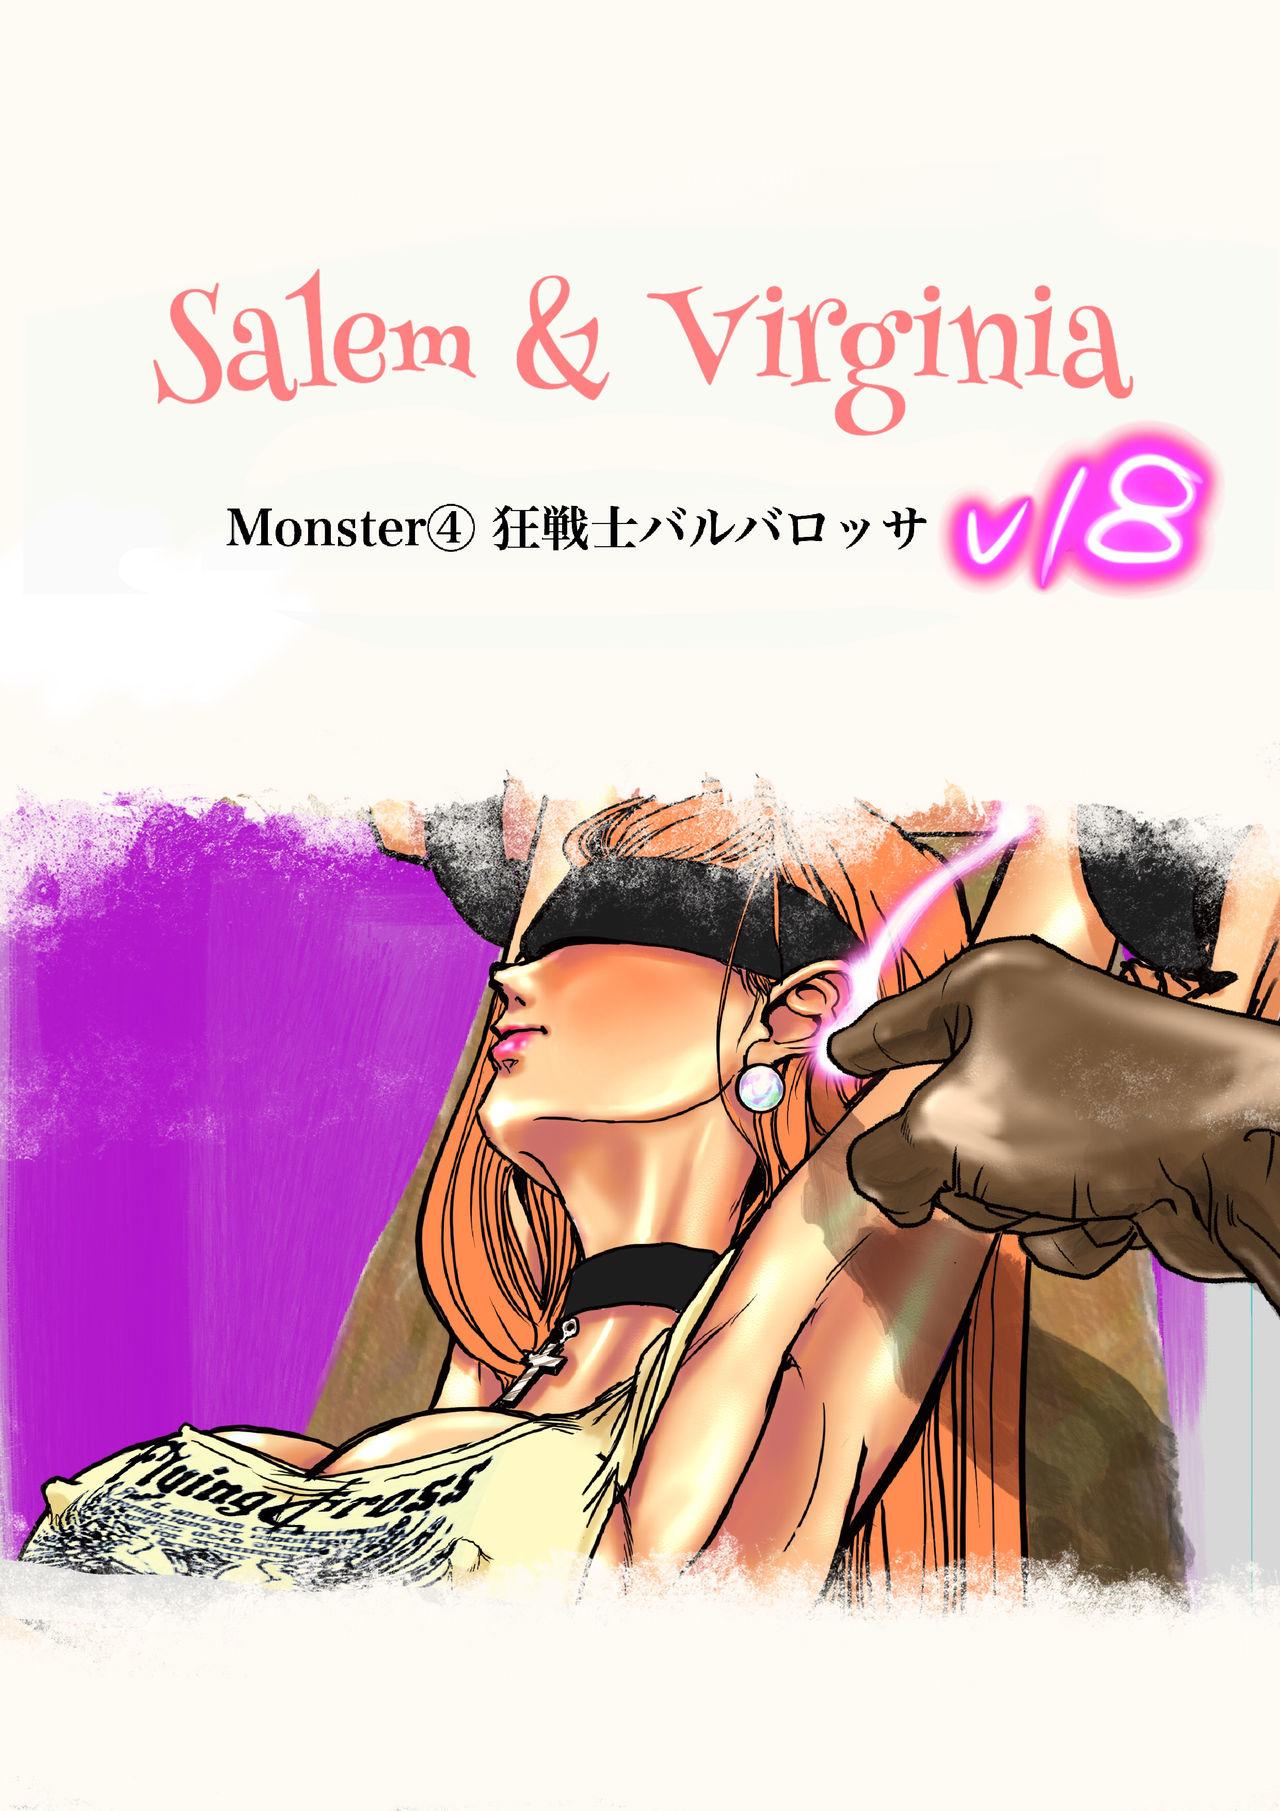 Salem & Virginia 135